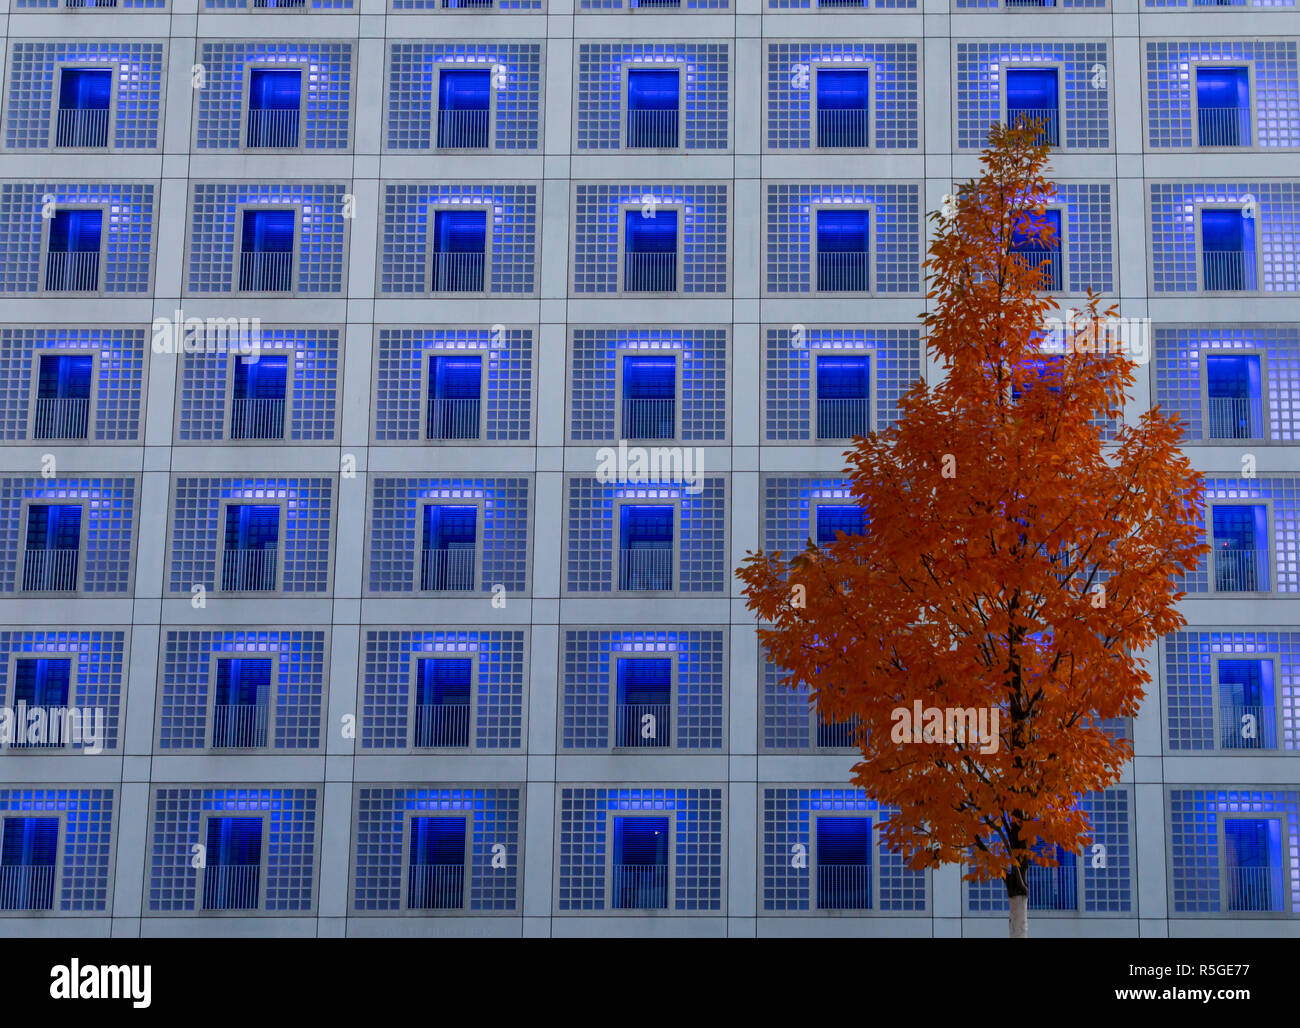 Die neue Stadtbibliothek in Stuttgart, im Europaviertel, moderne Fassade, Baum mit rštlichen BlŠttern im Herbst, beleuchtete Fenster, Glasbausteine, Stock Photo